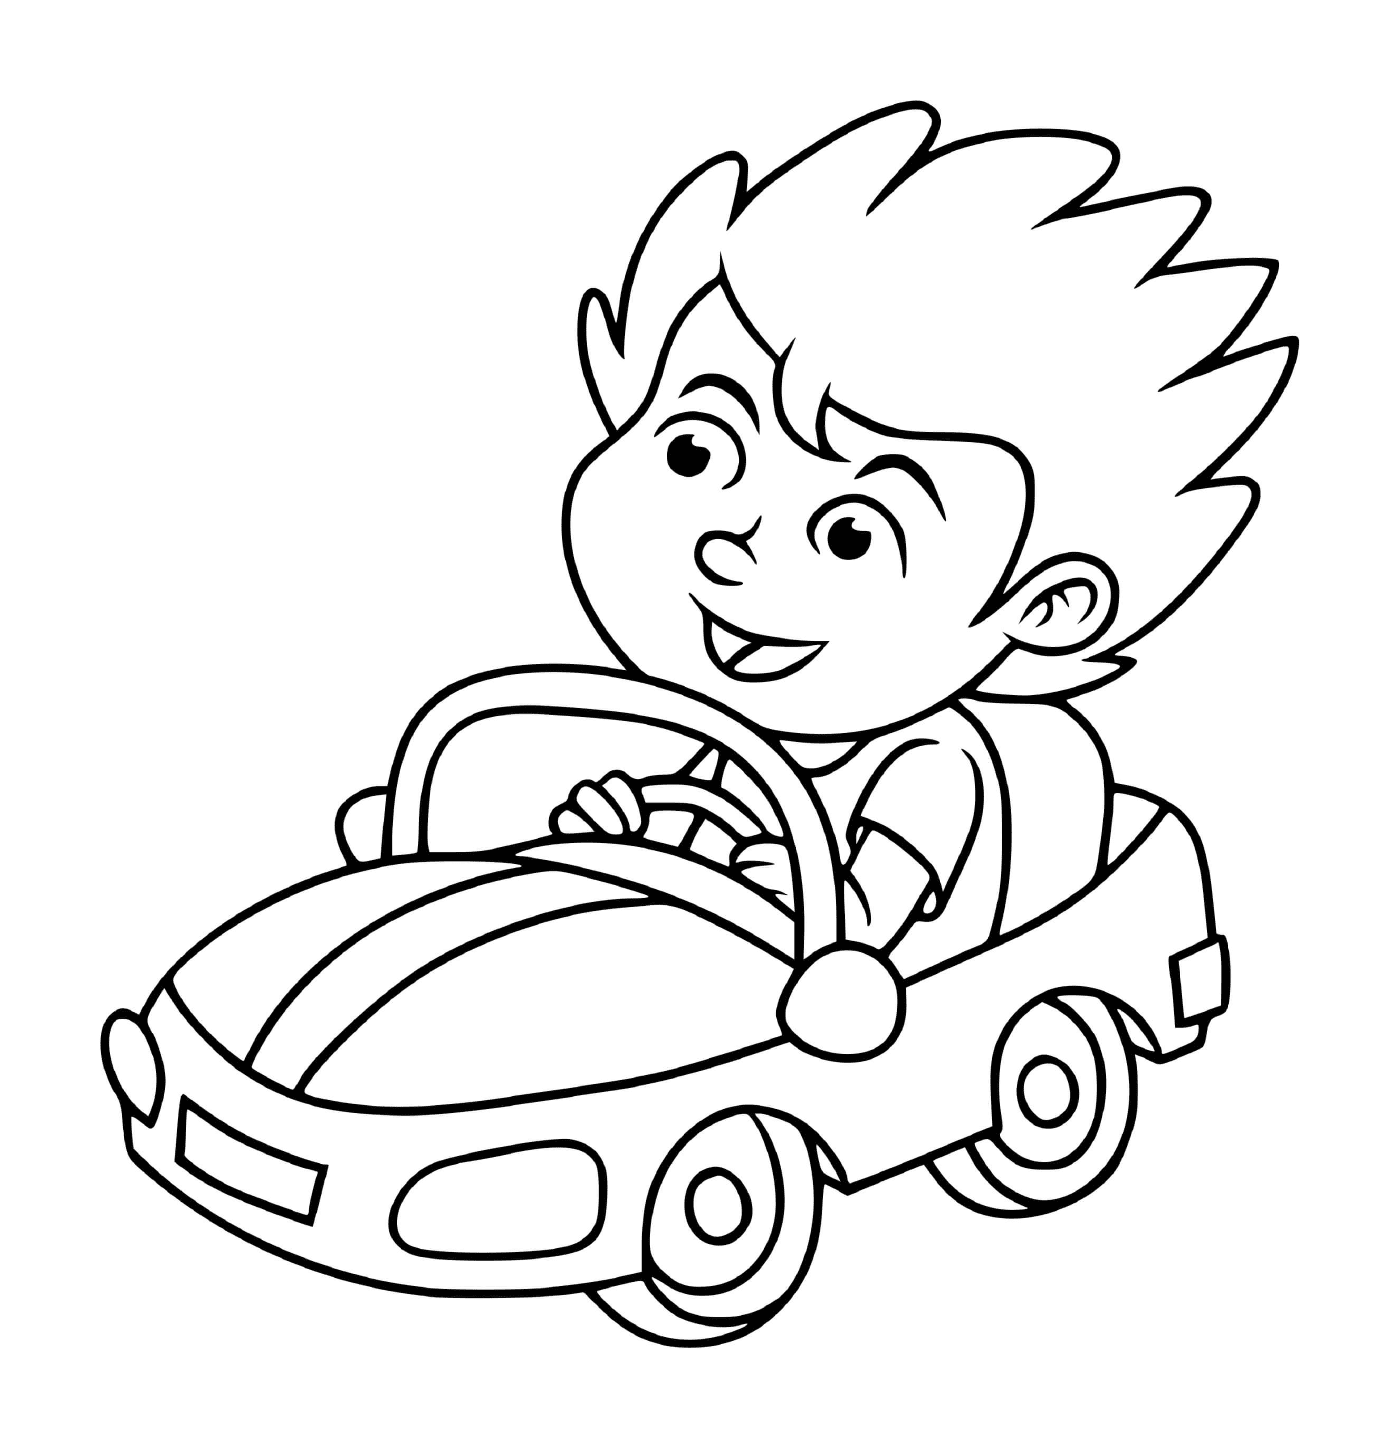   Un enfant conduit une voiture avec assurance 